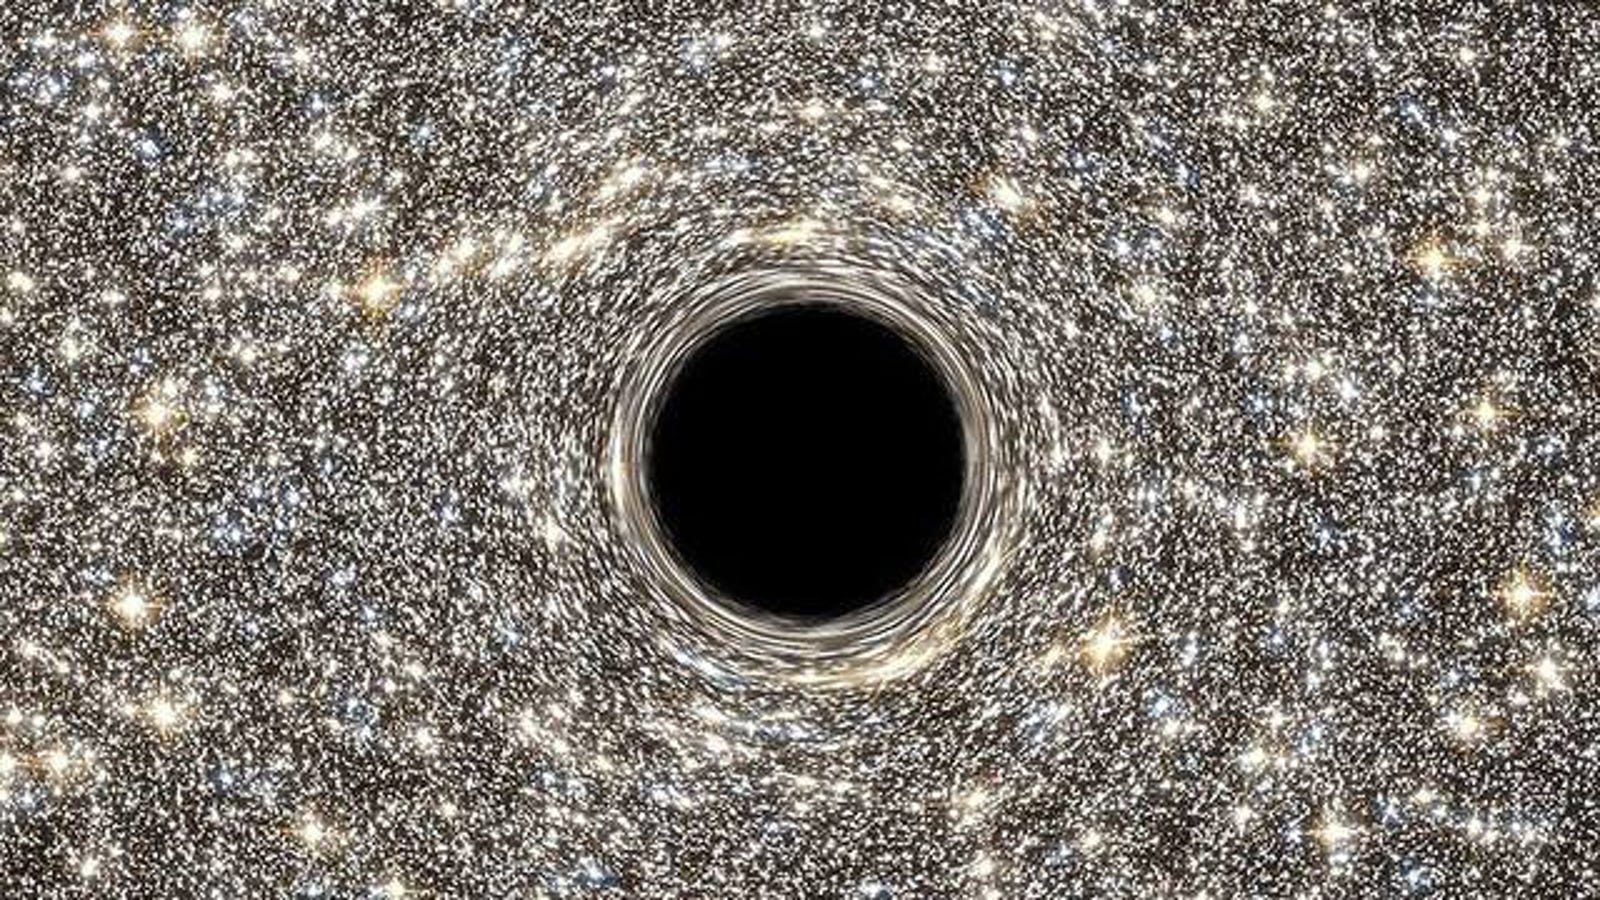 blackhole gloryhole flash